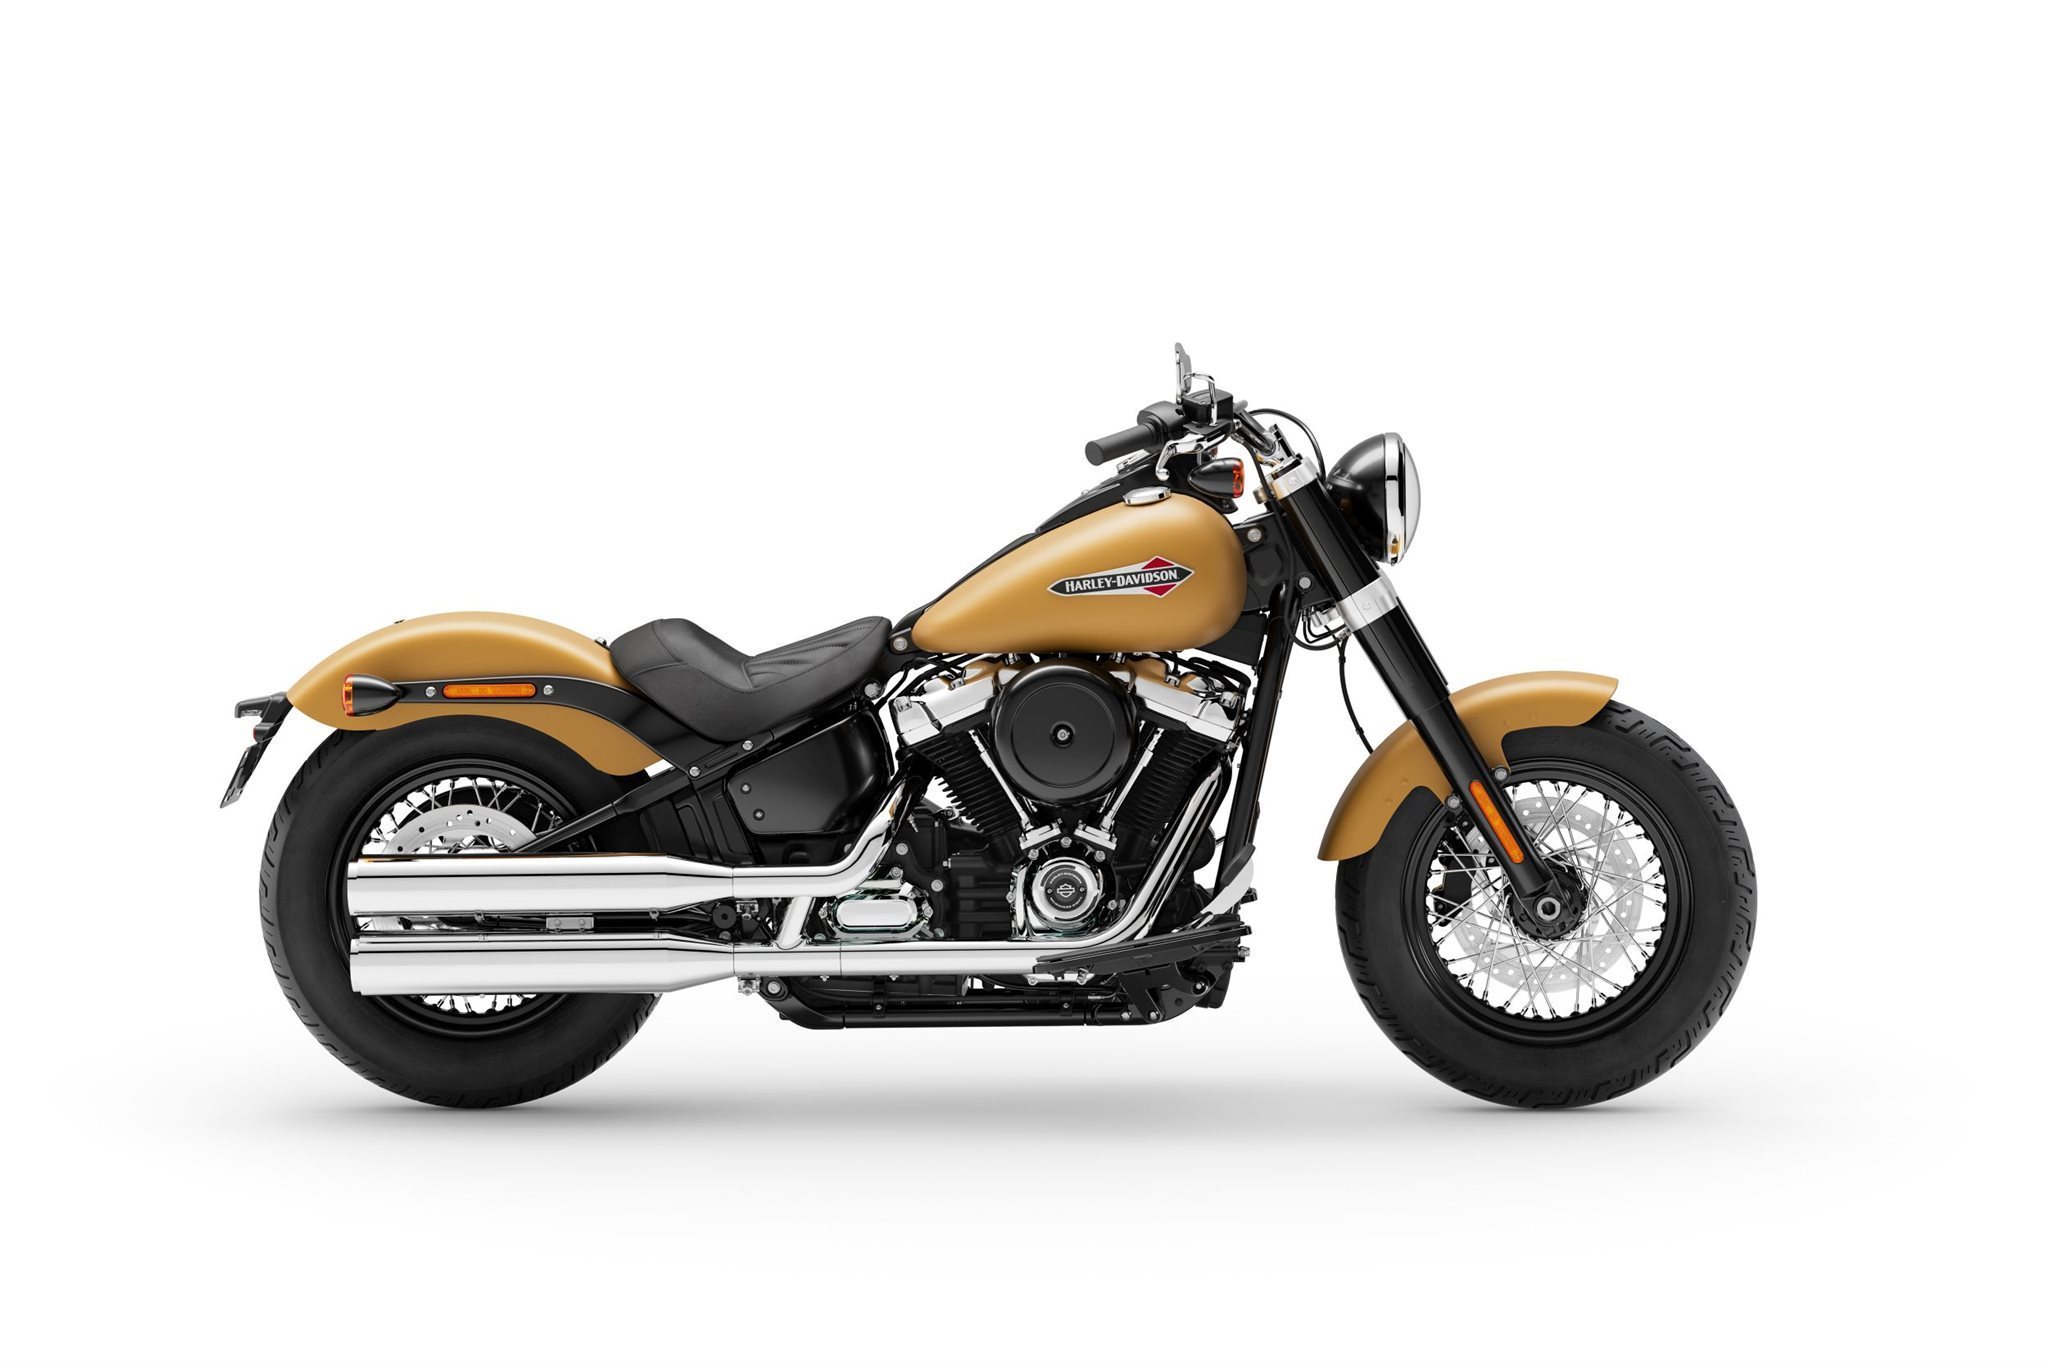 Motorrad Vergleich Harley Davidson Softail Slim Flsl 2021 Vs Indian Chief Bobber Dark Horse 2021